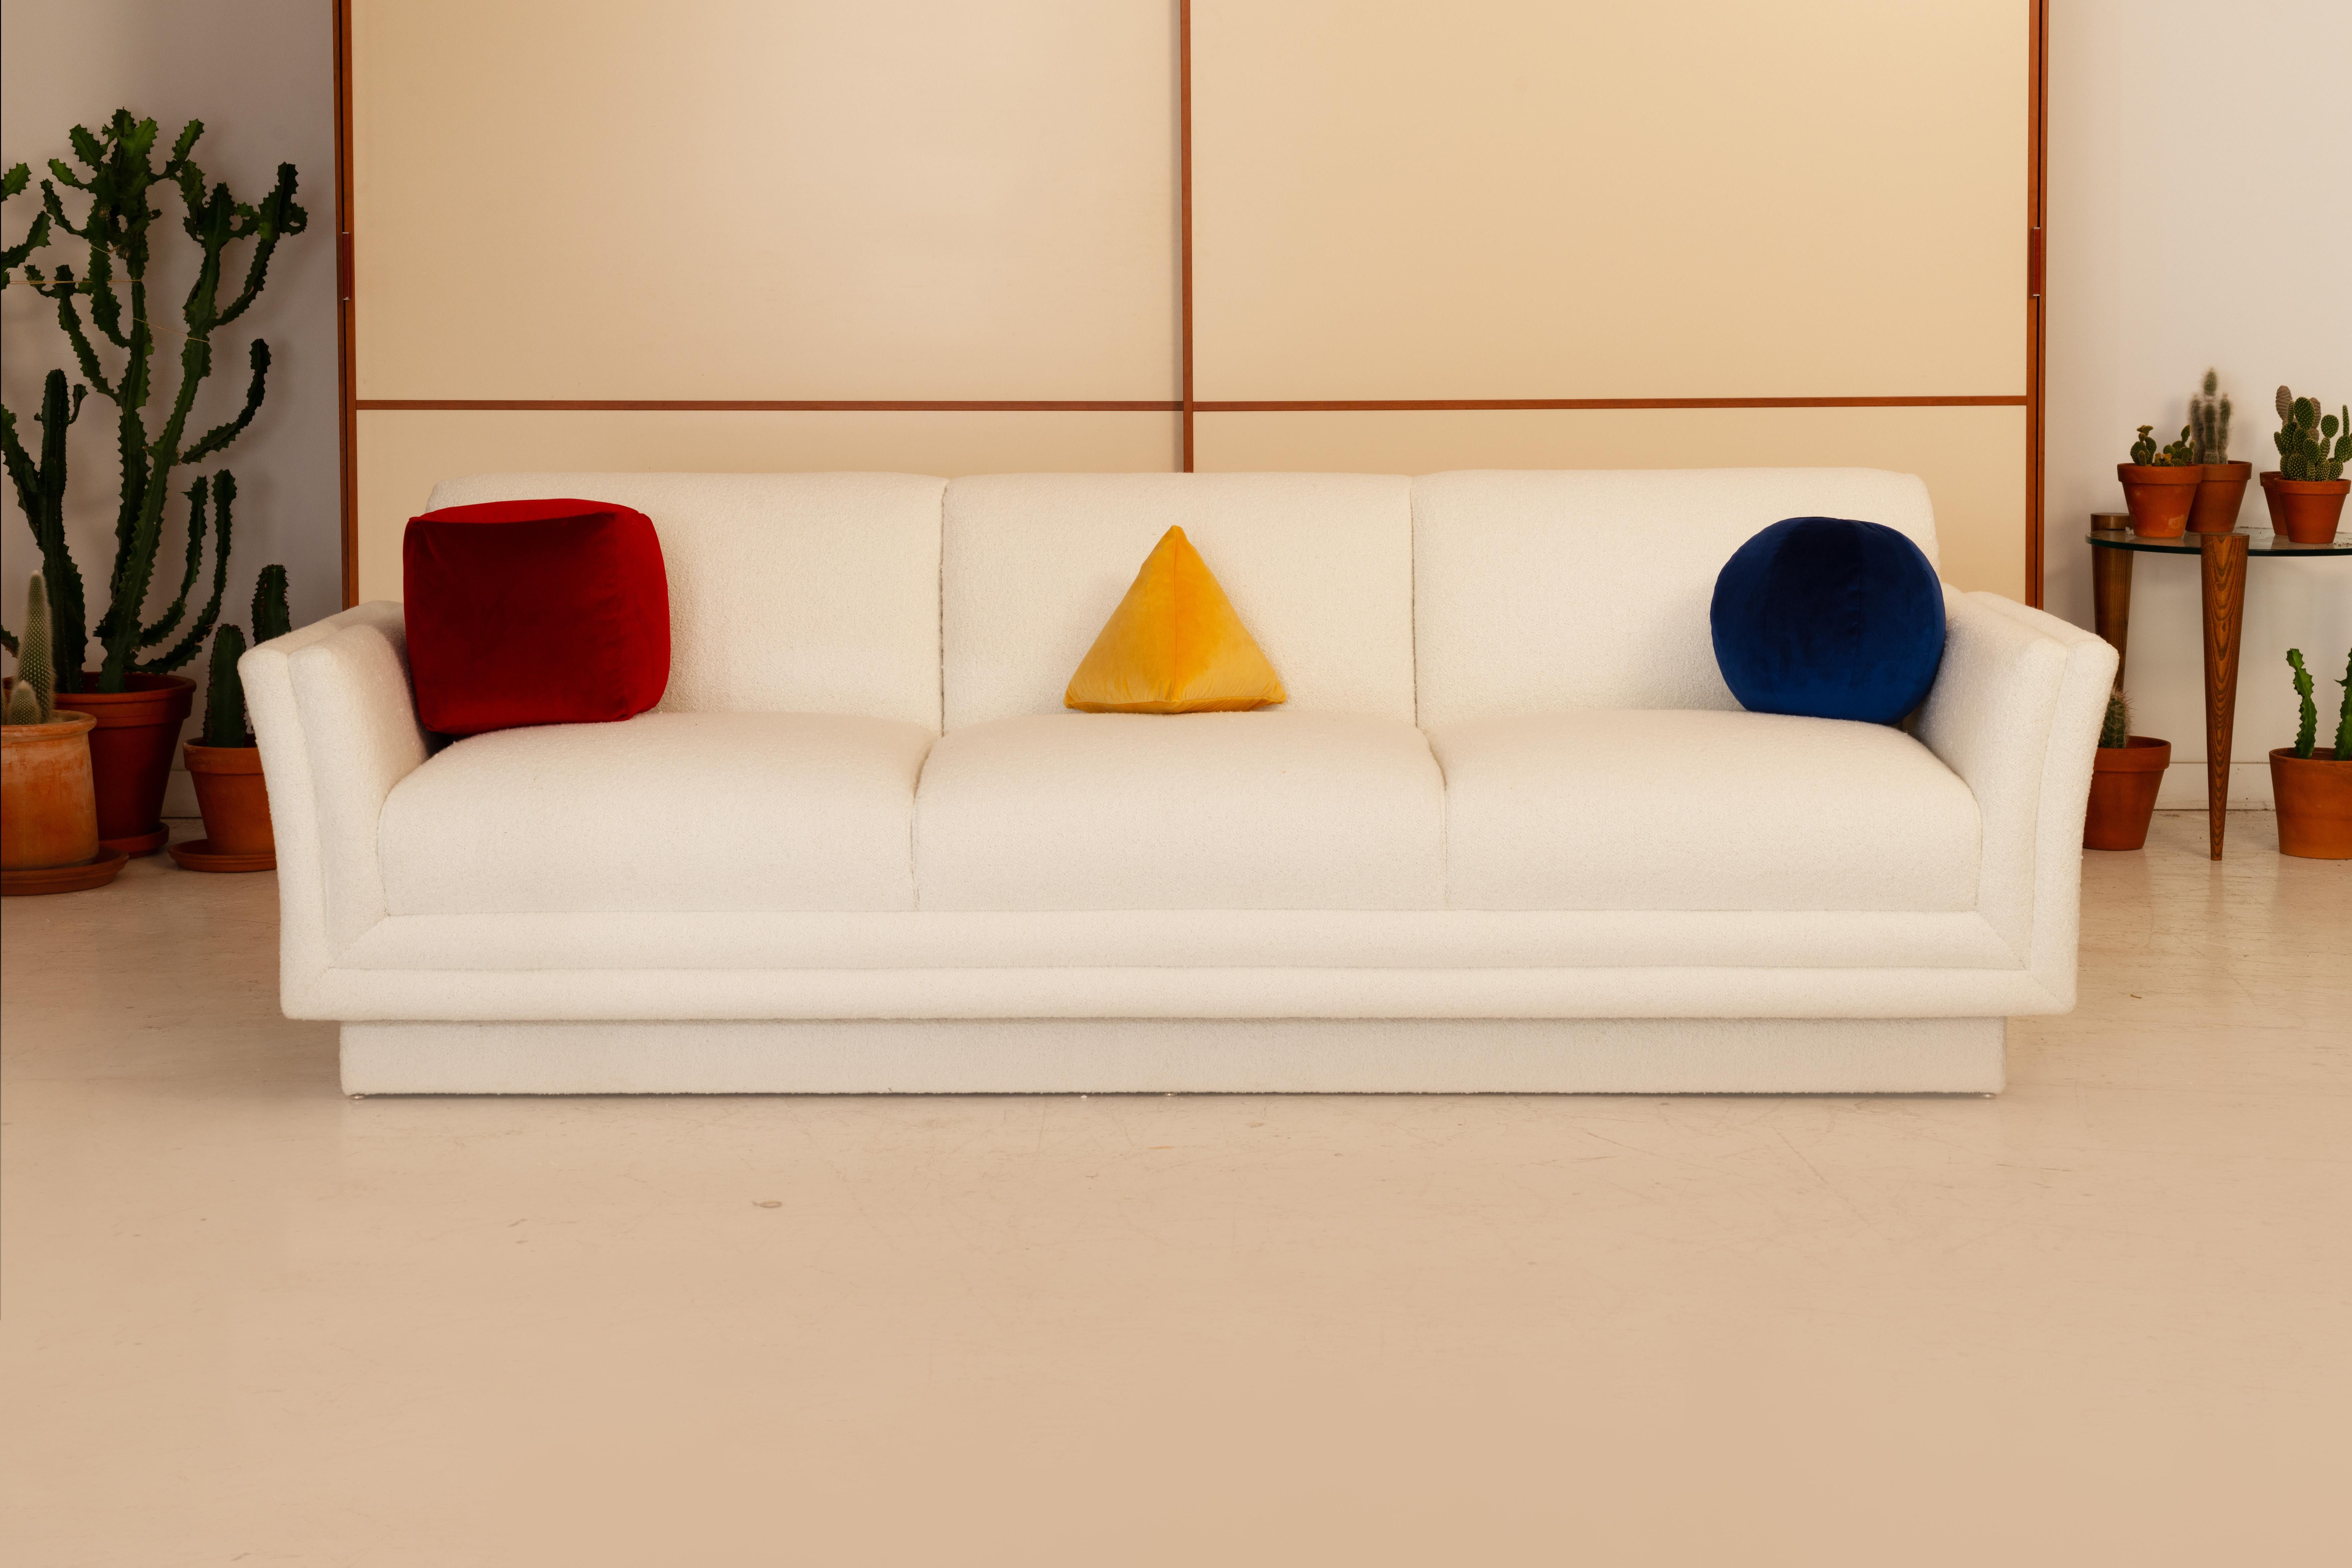 Élevez votre espace avec notre trio de coussins d'inspiration Bauhaus, chaque coussin est méticuleusement fabriqué à la main et enveloppé d'un luxueux velours de polyester Kensington. Cette collection présente un cube rouge vibrant, une sphère bleue